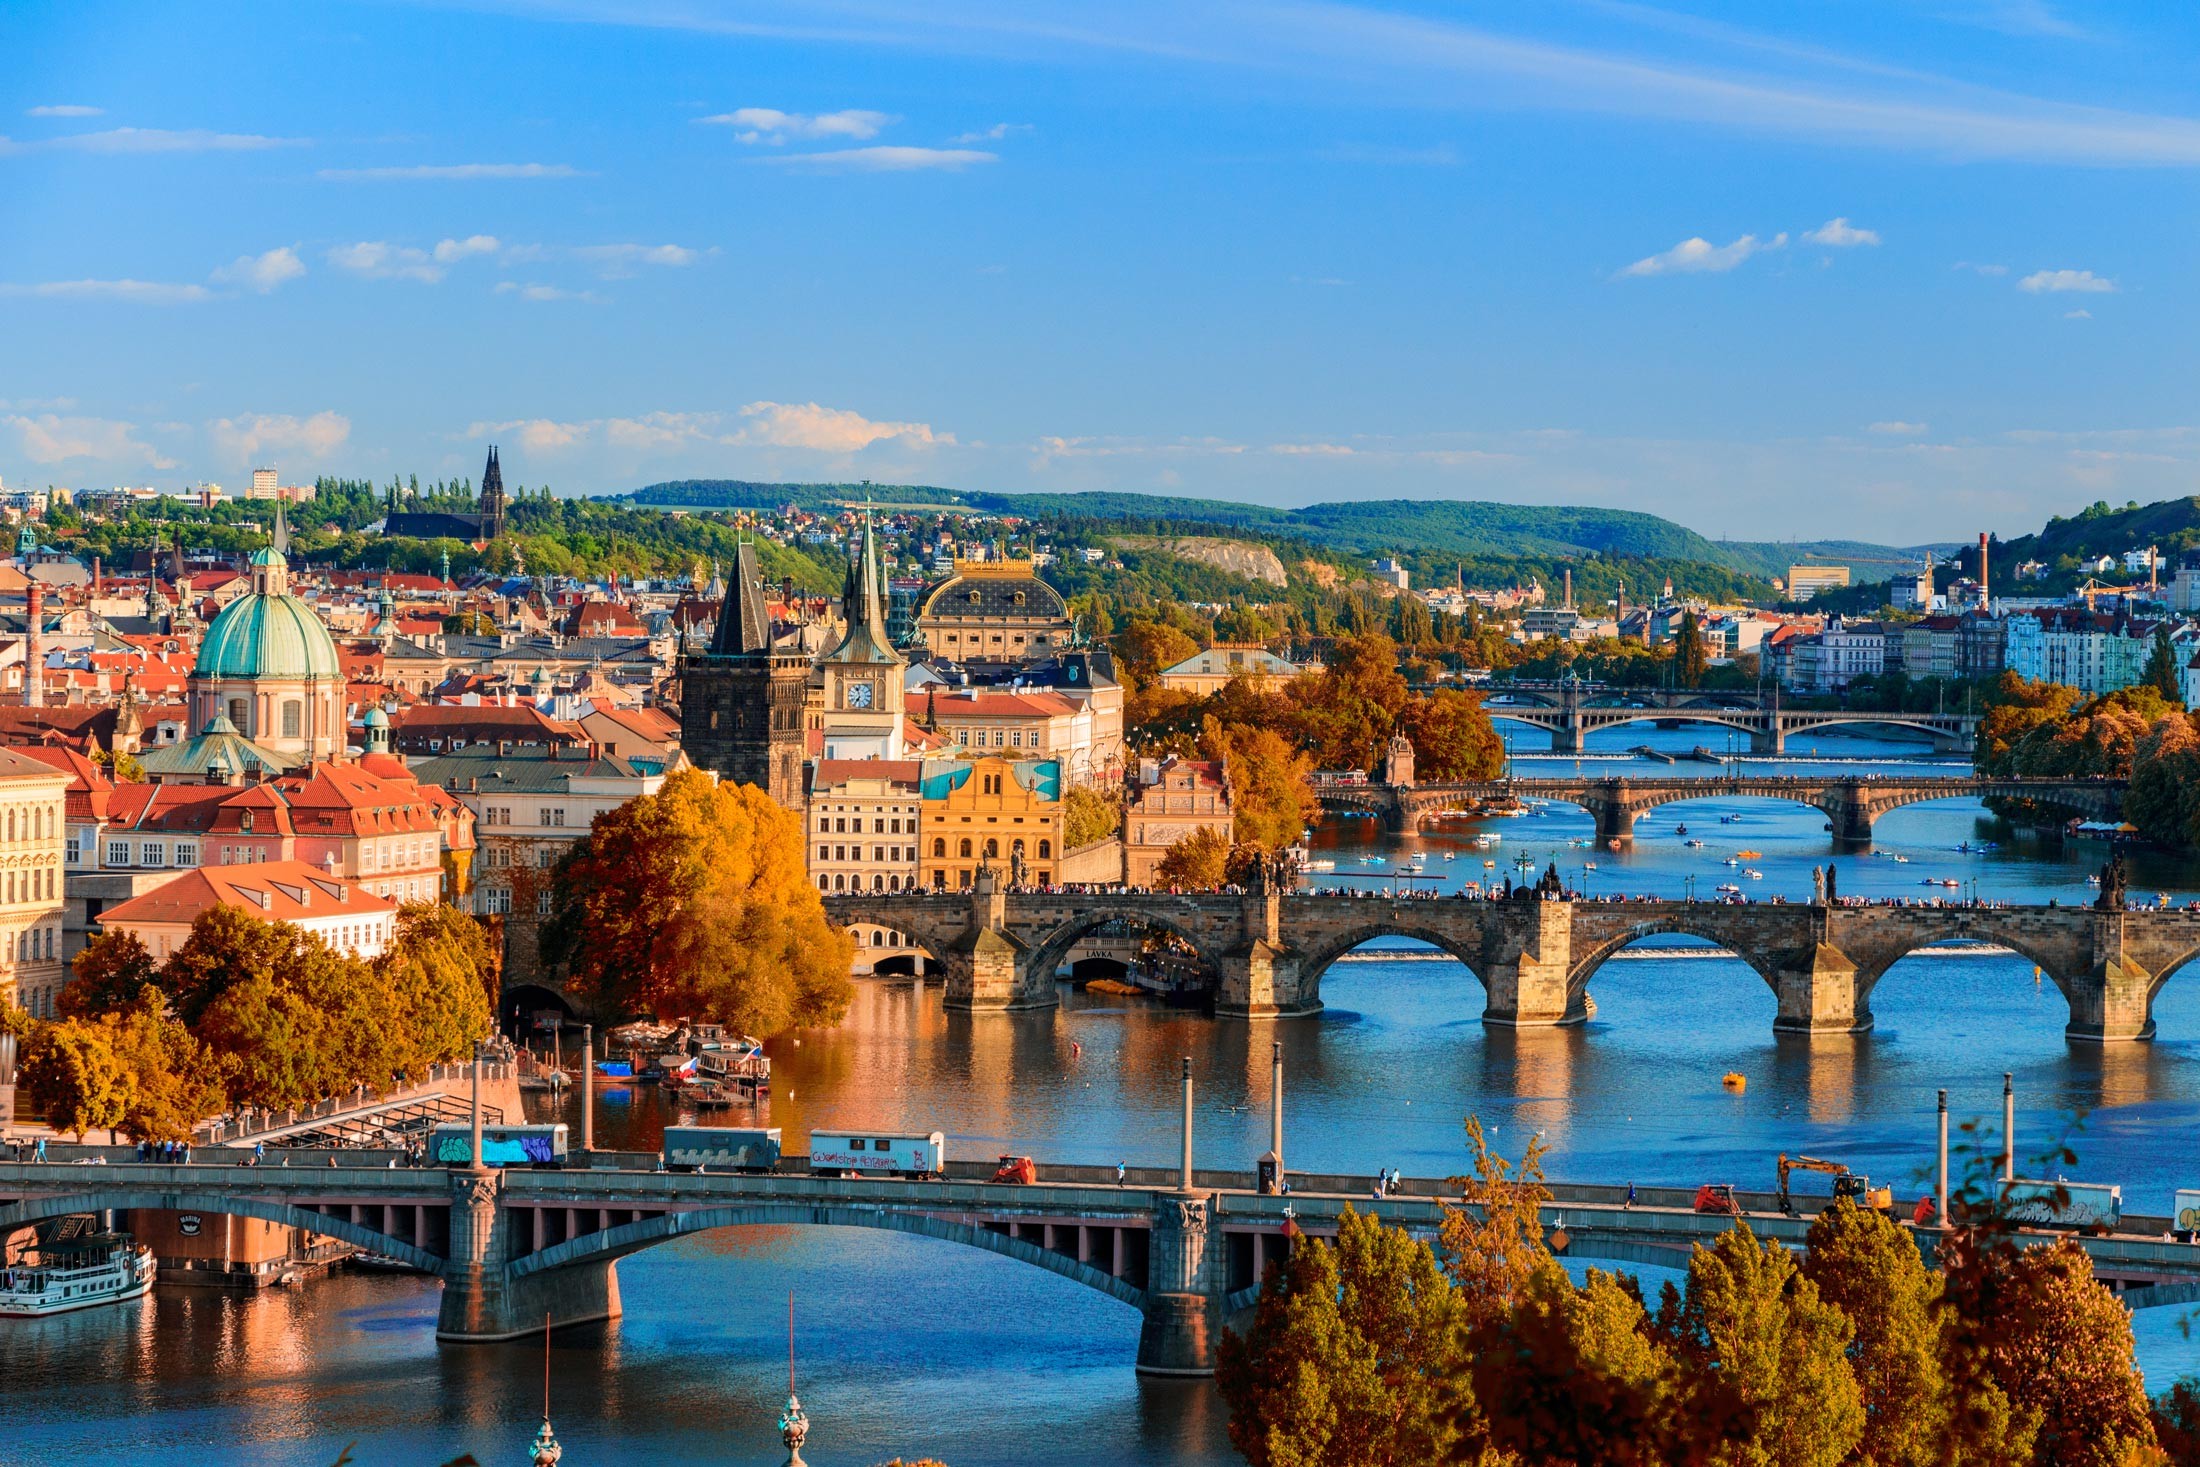 Tour du lịch Châu Âu siêu tiết kiệm: PHÁP – ĐỨC – ÁO – HUNGARY – CH SÉC